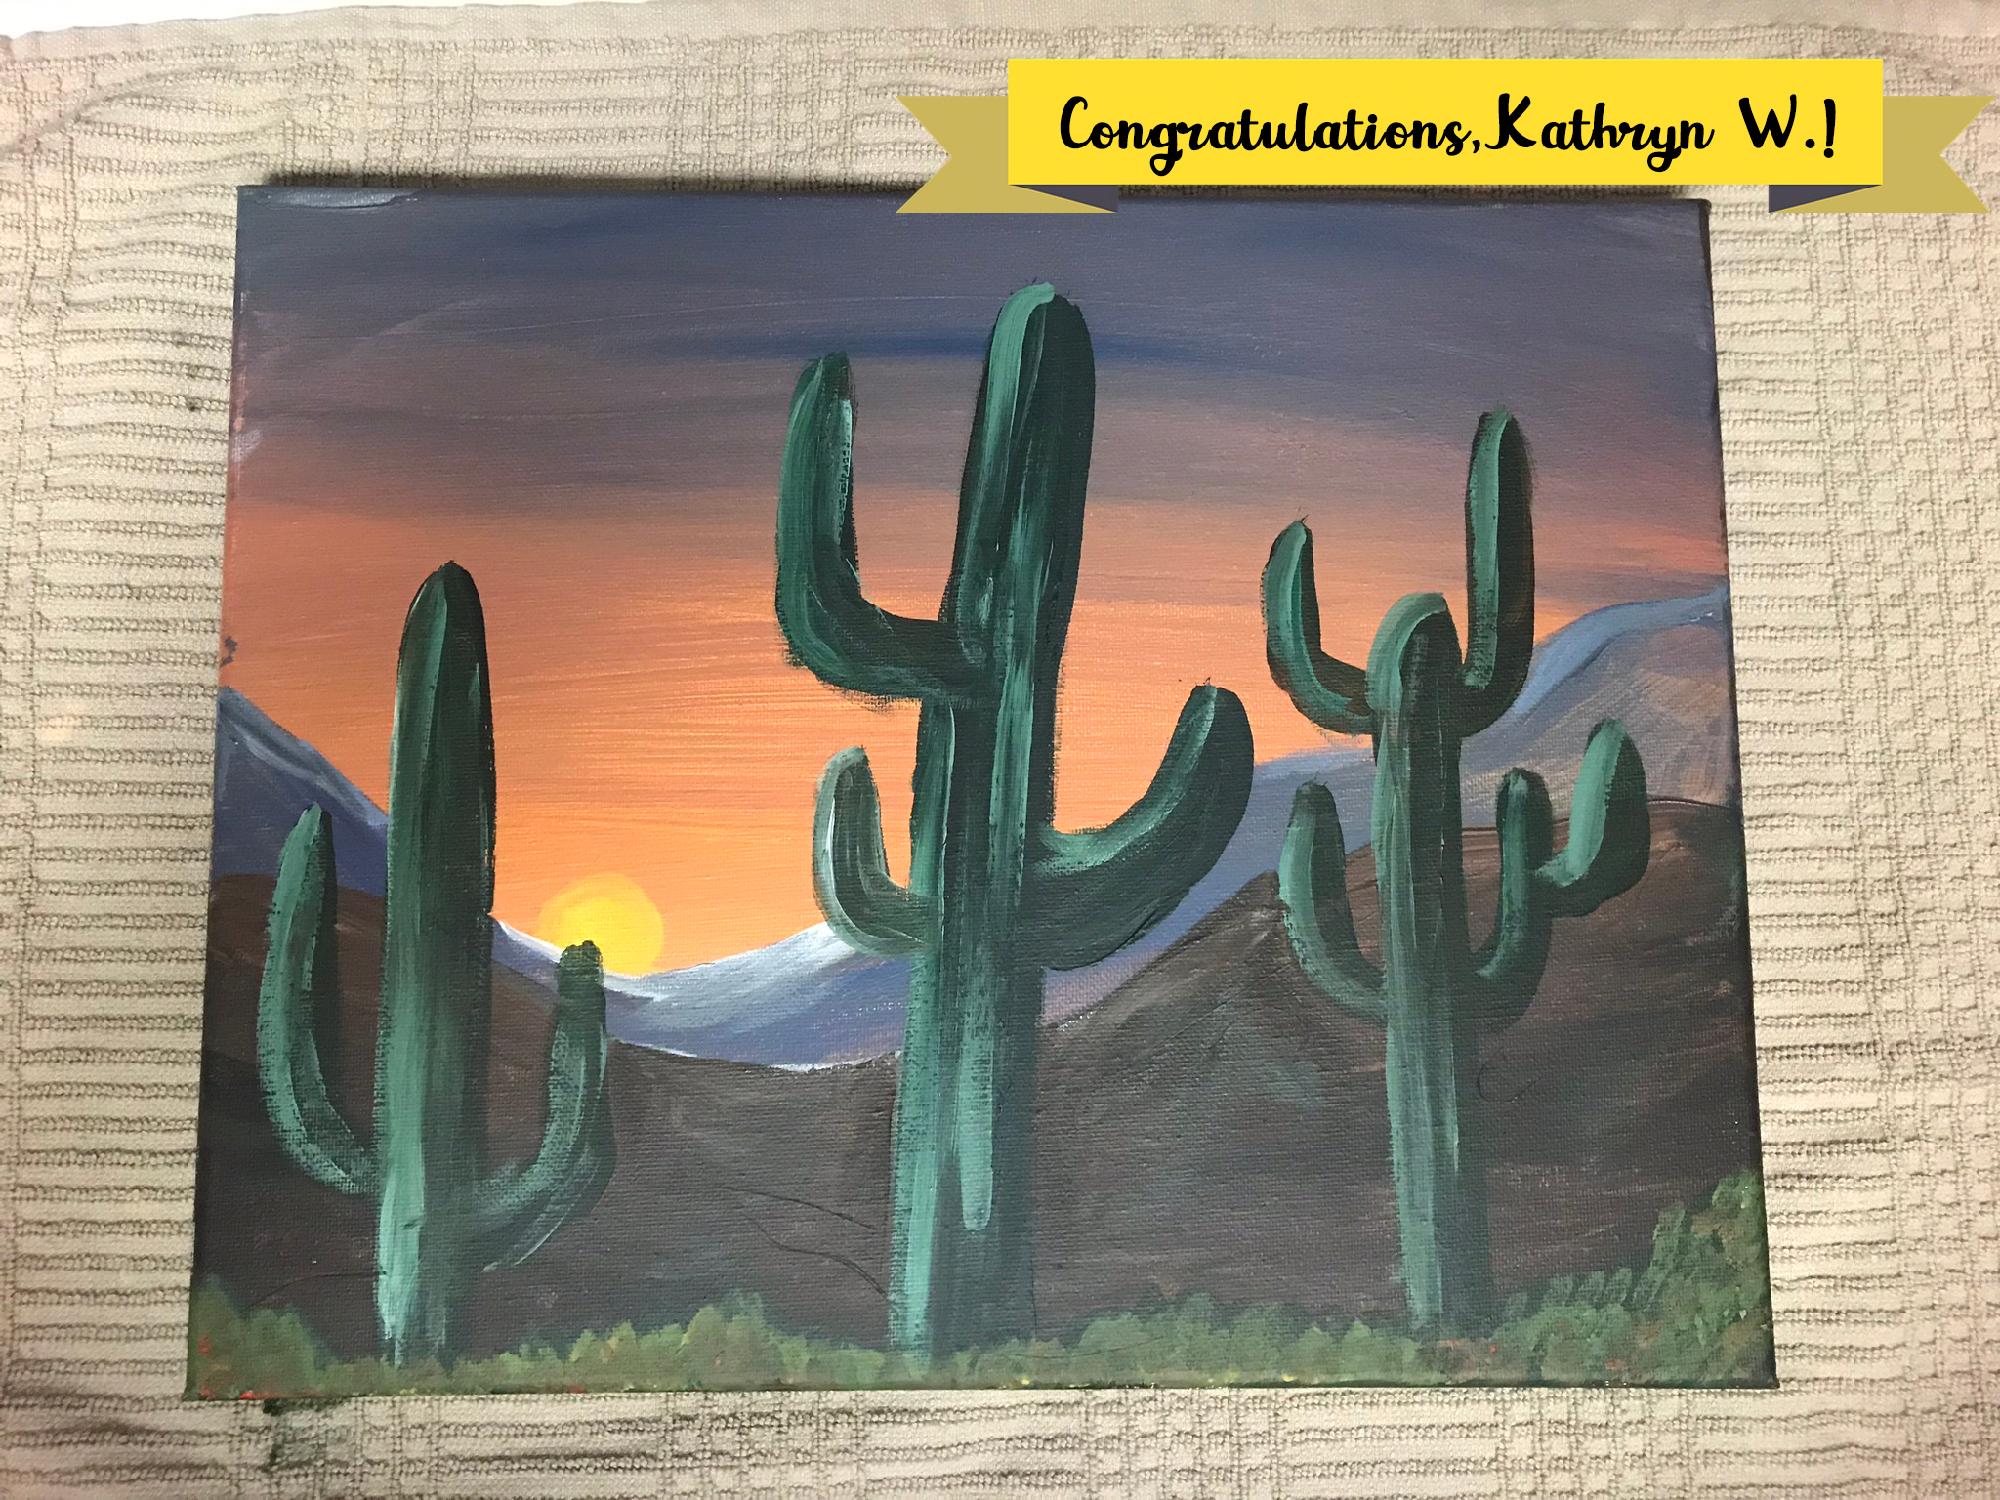 Arizona Painting Contest Winner